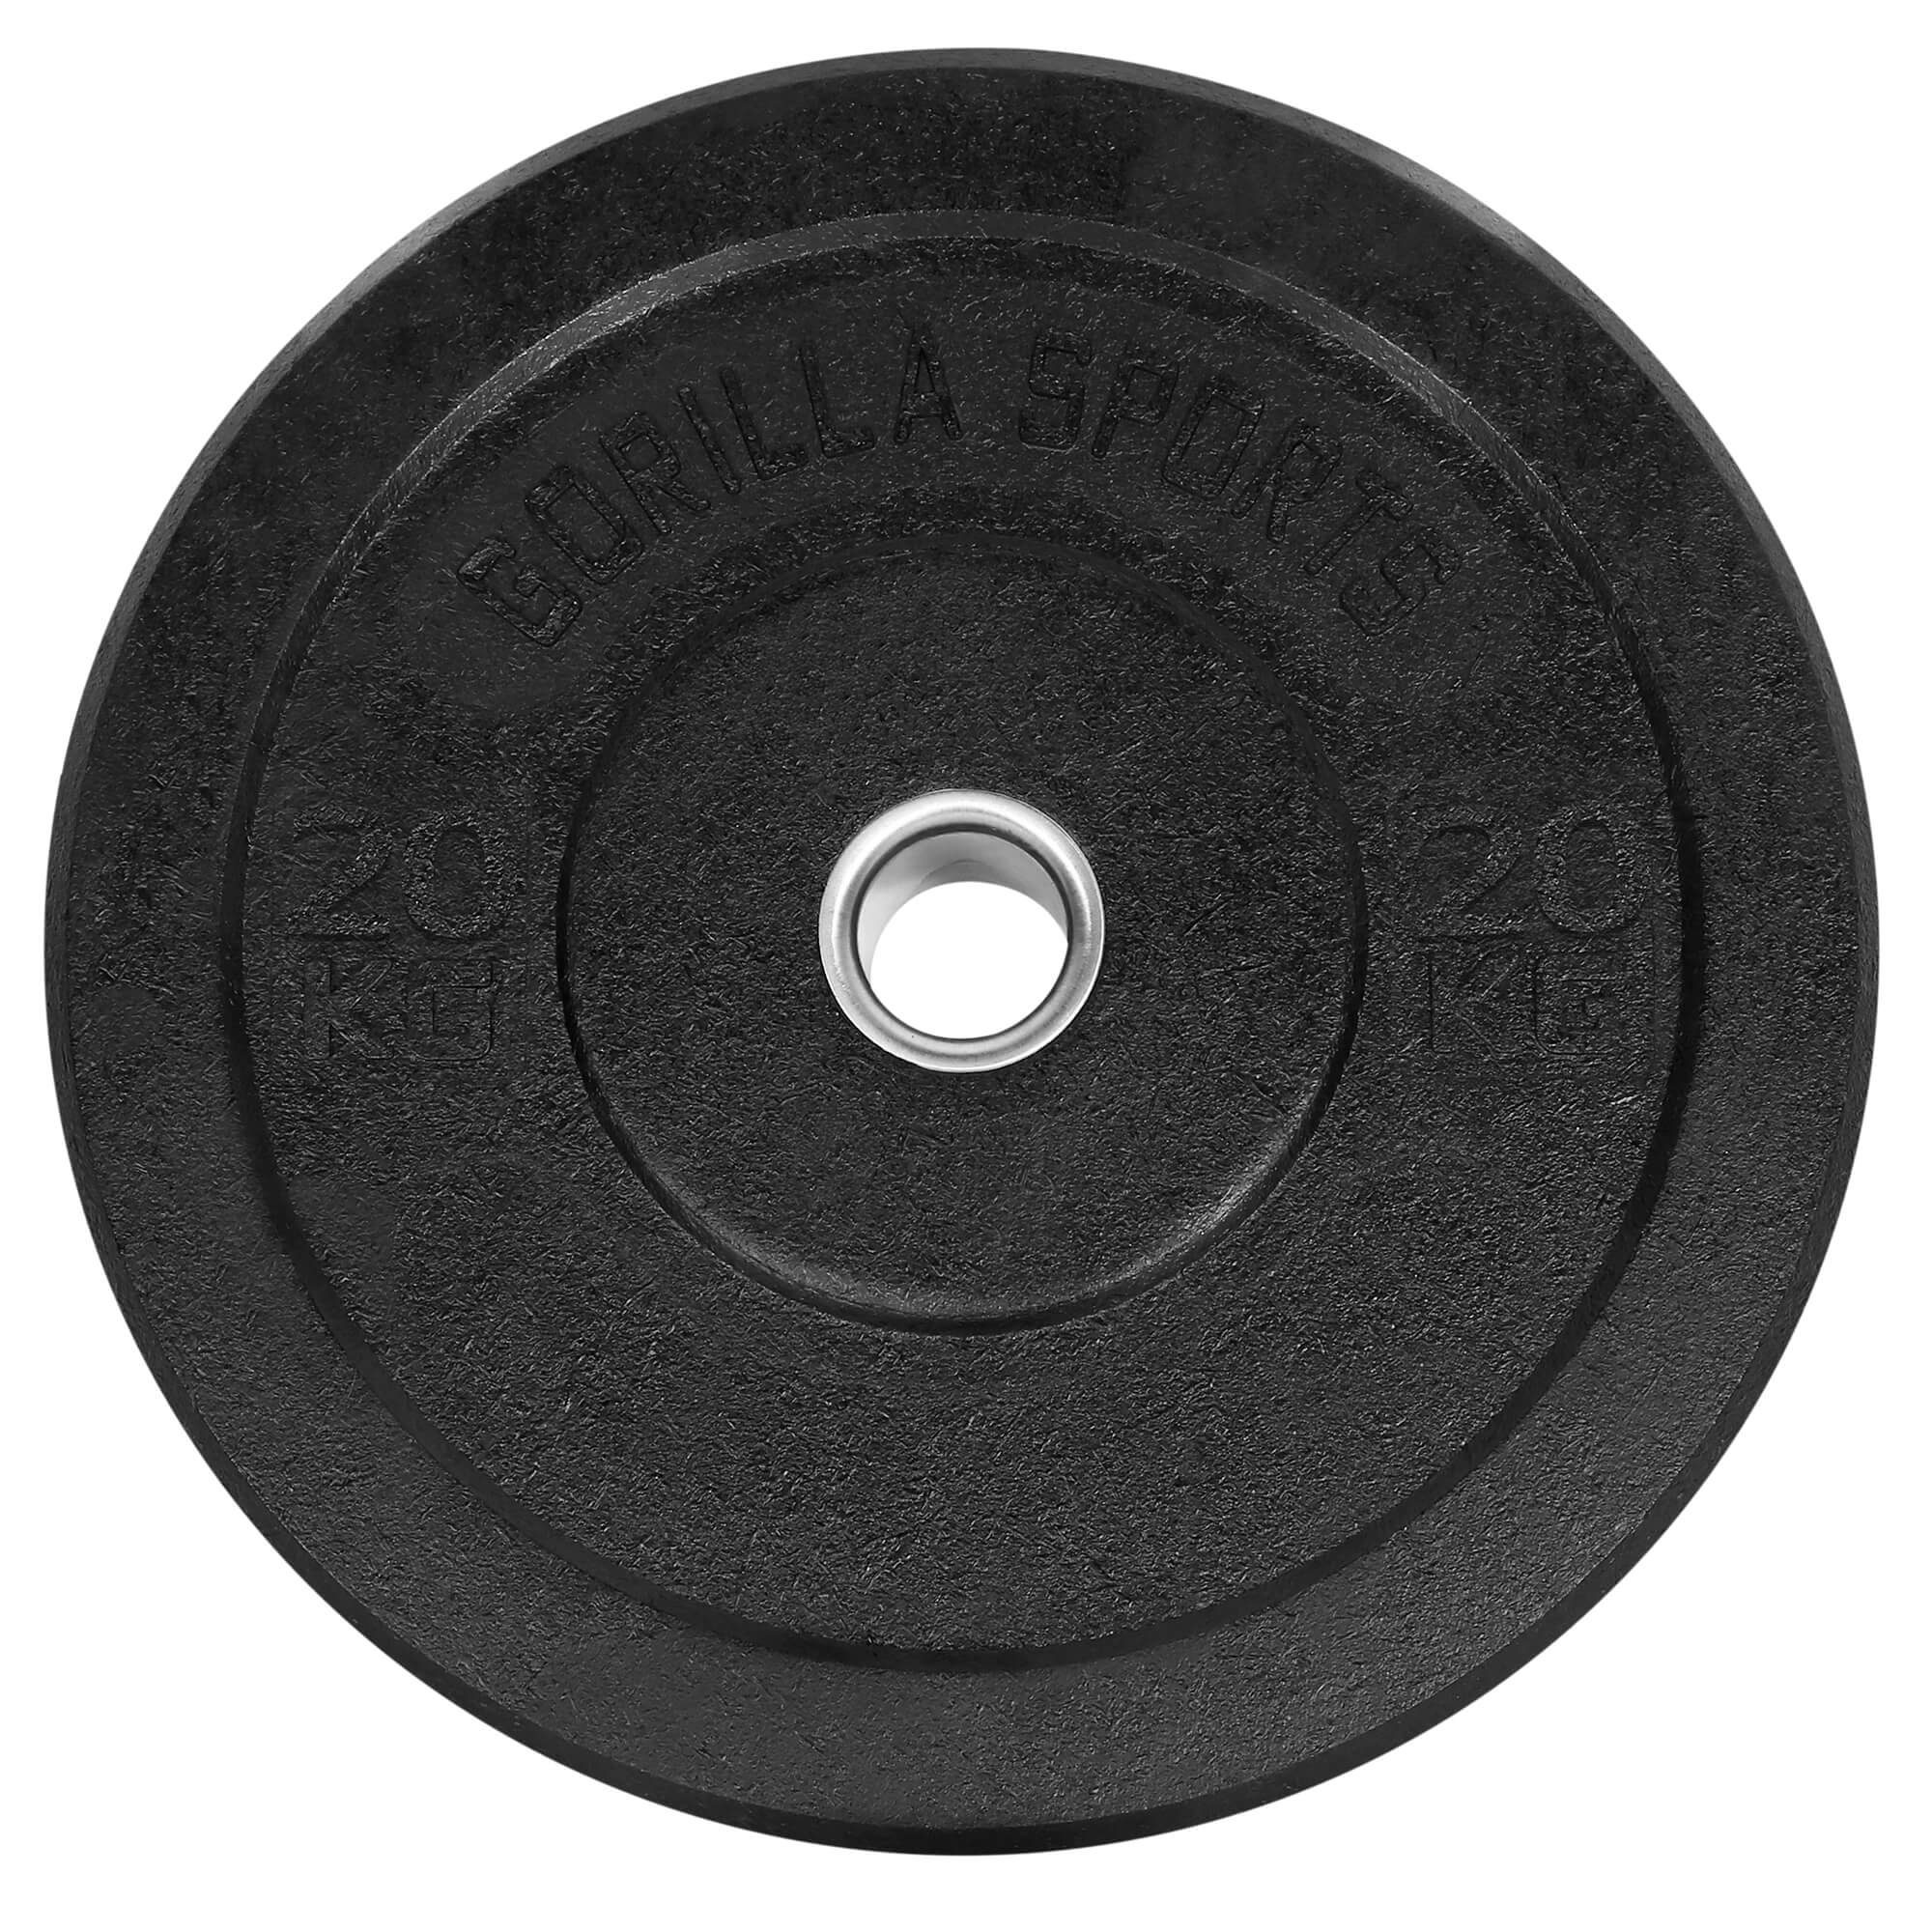 20kg SPORTS Gewichte,Einzeln/Set,Bumper Olympia,5-50kg Plates,Gewichtsscheiben Hantelscheiben GORILLA